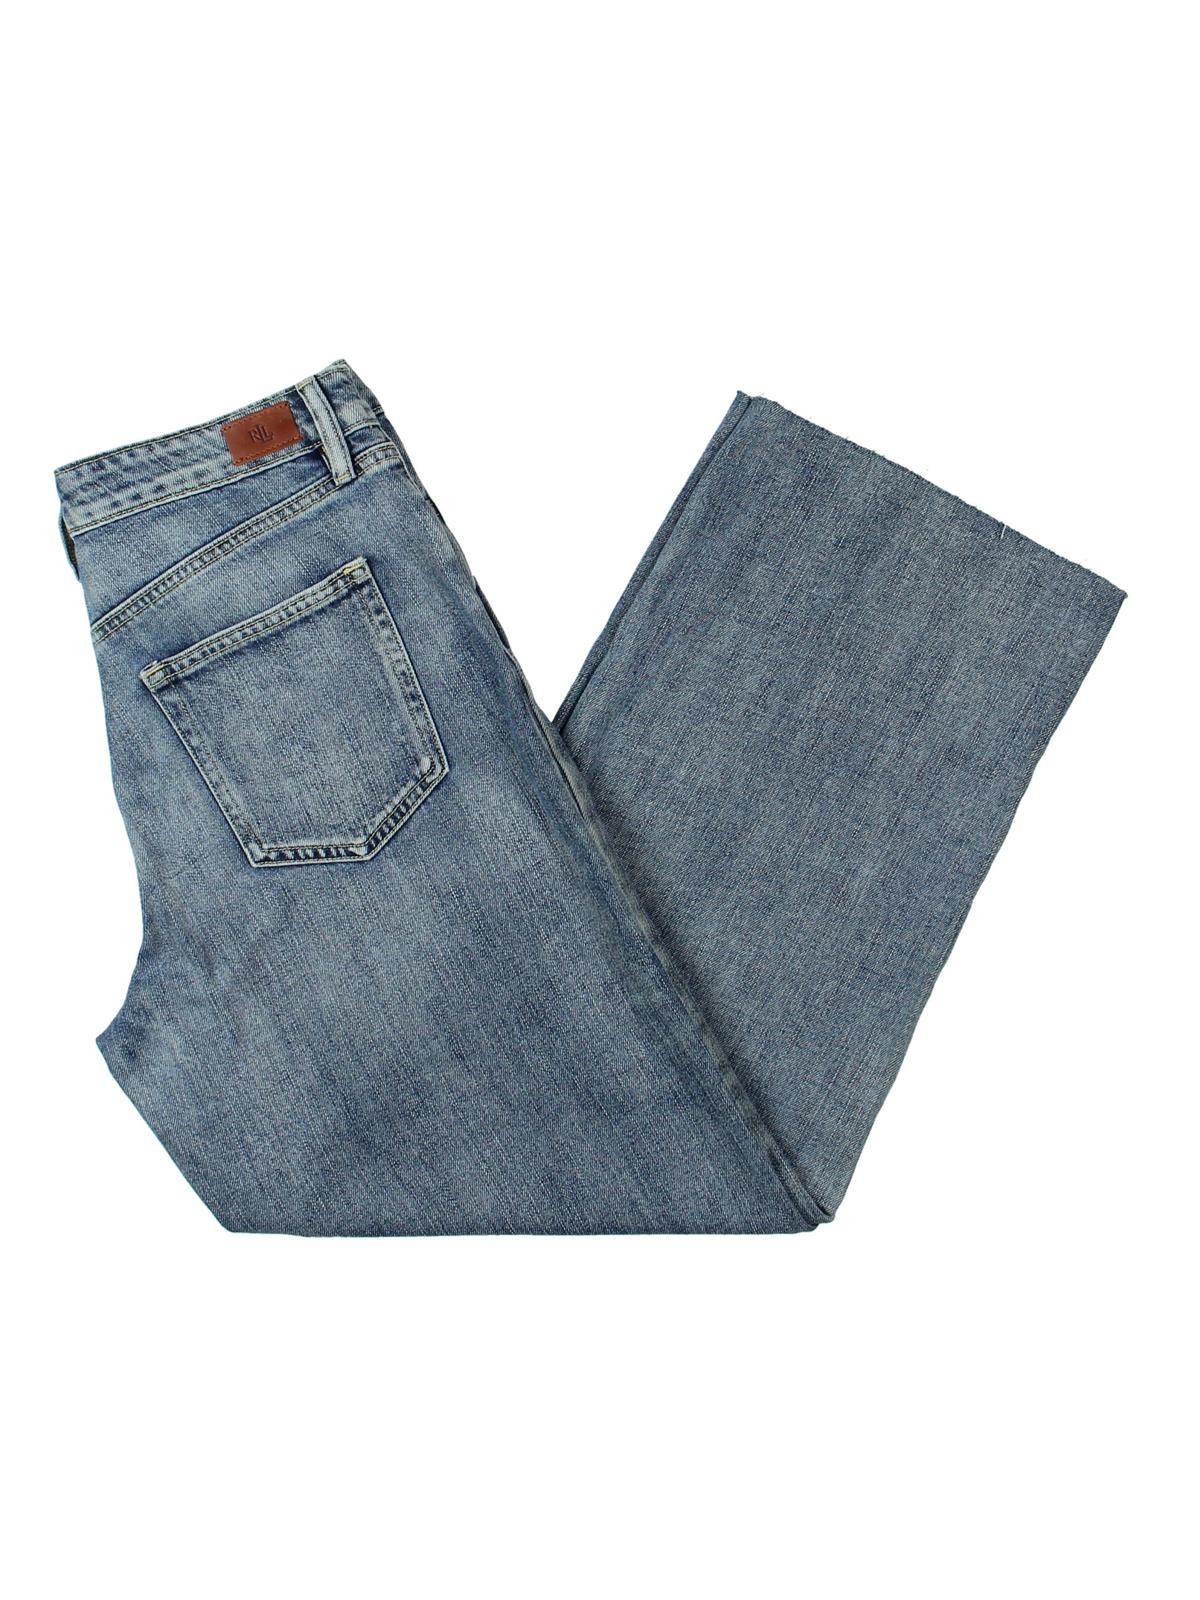 Denim & Supply Ralph Lauren Jeans 32/32 - Etsy